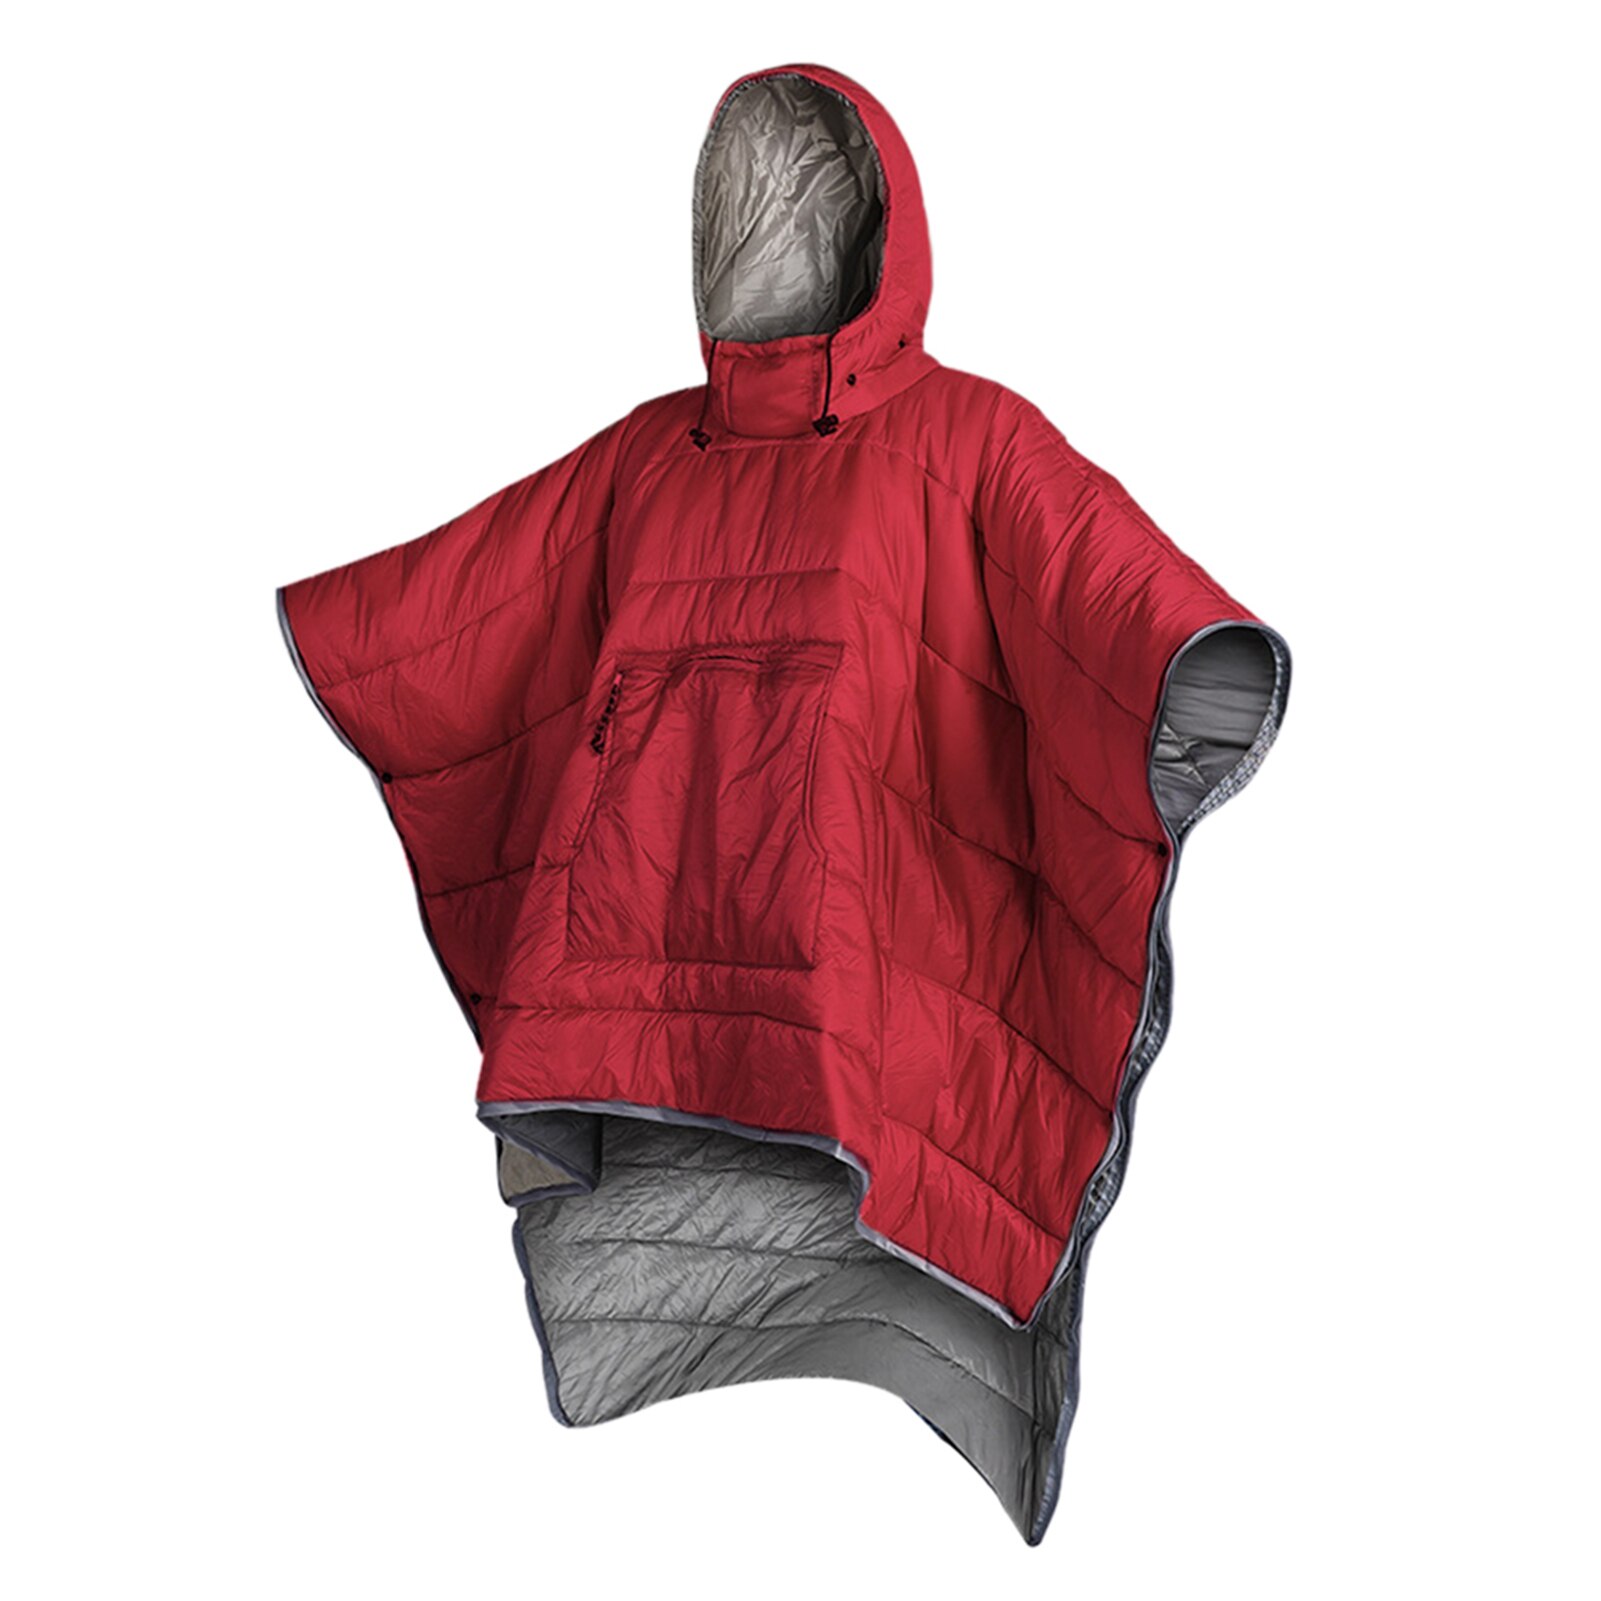 Vandtæt sovepose kappe poncho camping varm sove quilt udendørs camping sove tæppe quilt frakke med hætte: Rød